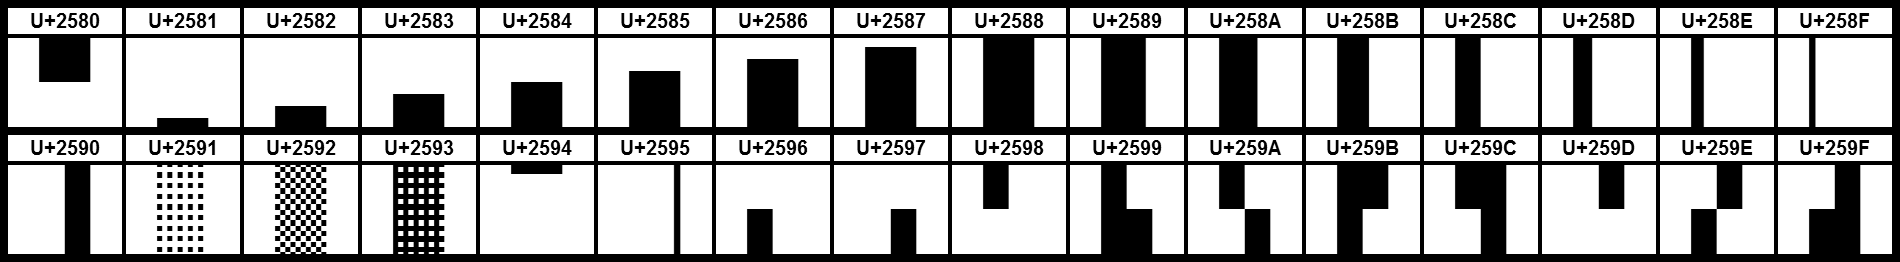 unicode block characters table